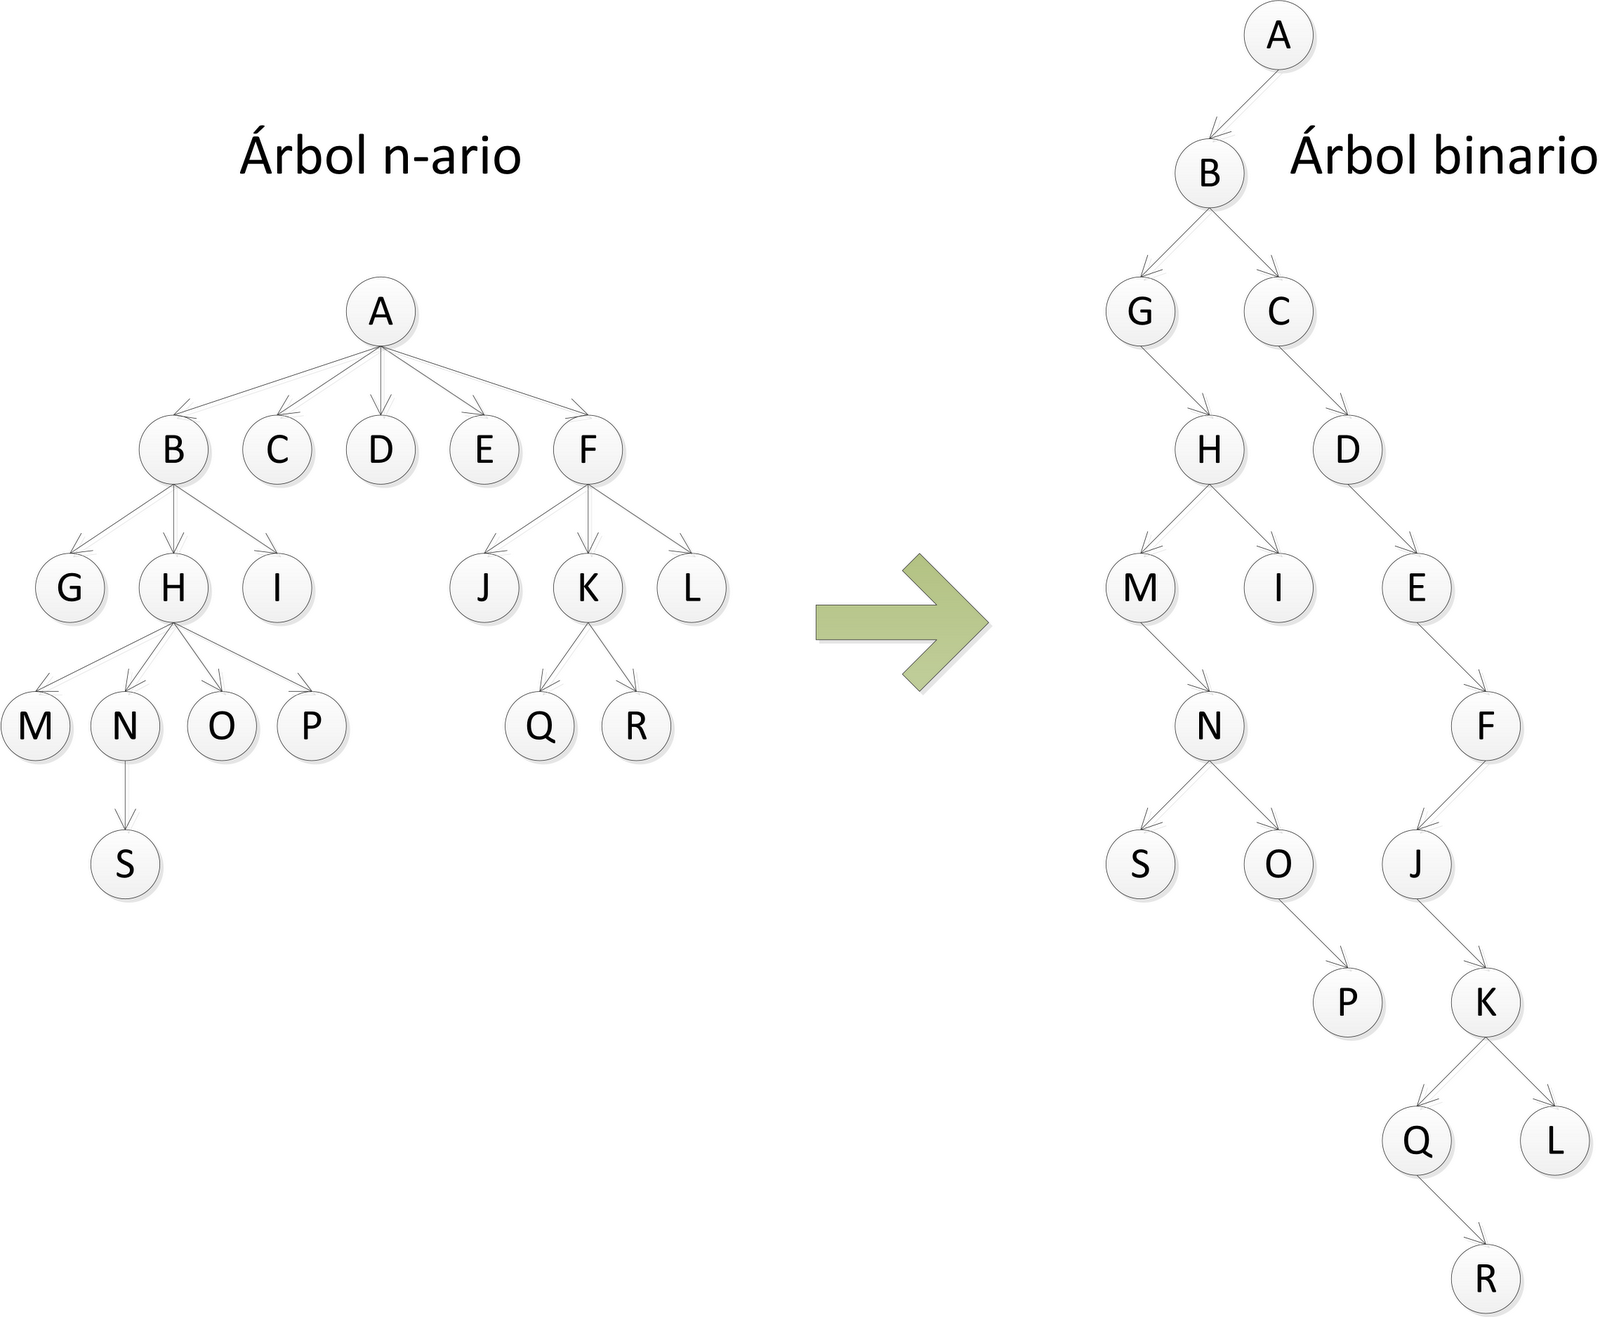 Convertir un árbol n-ario a binario